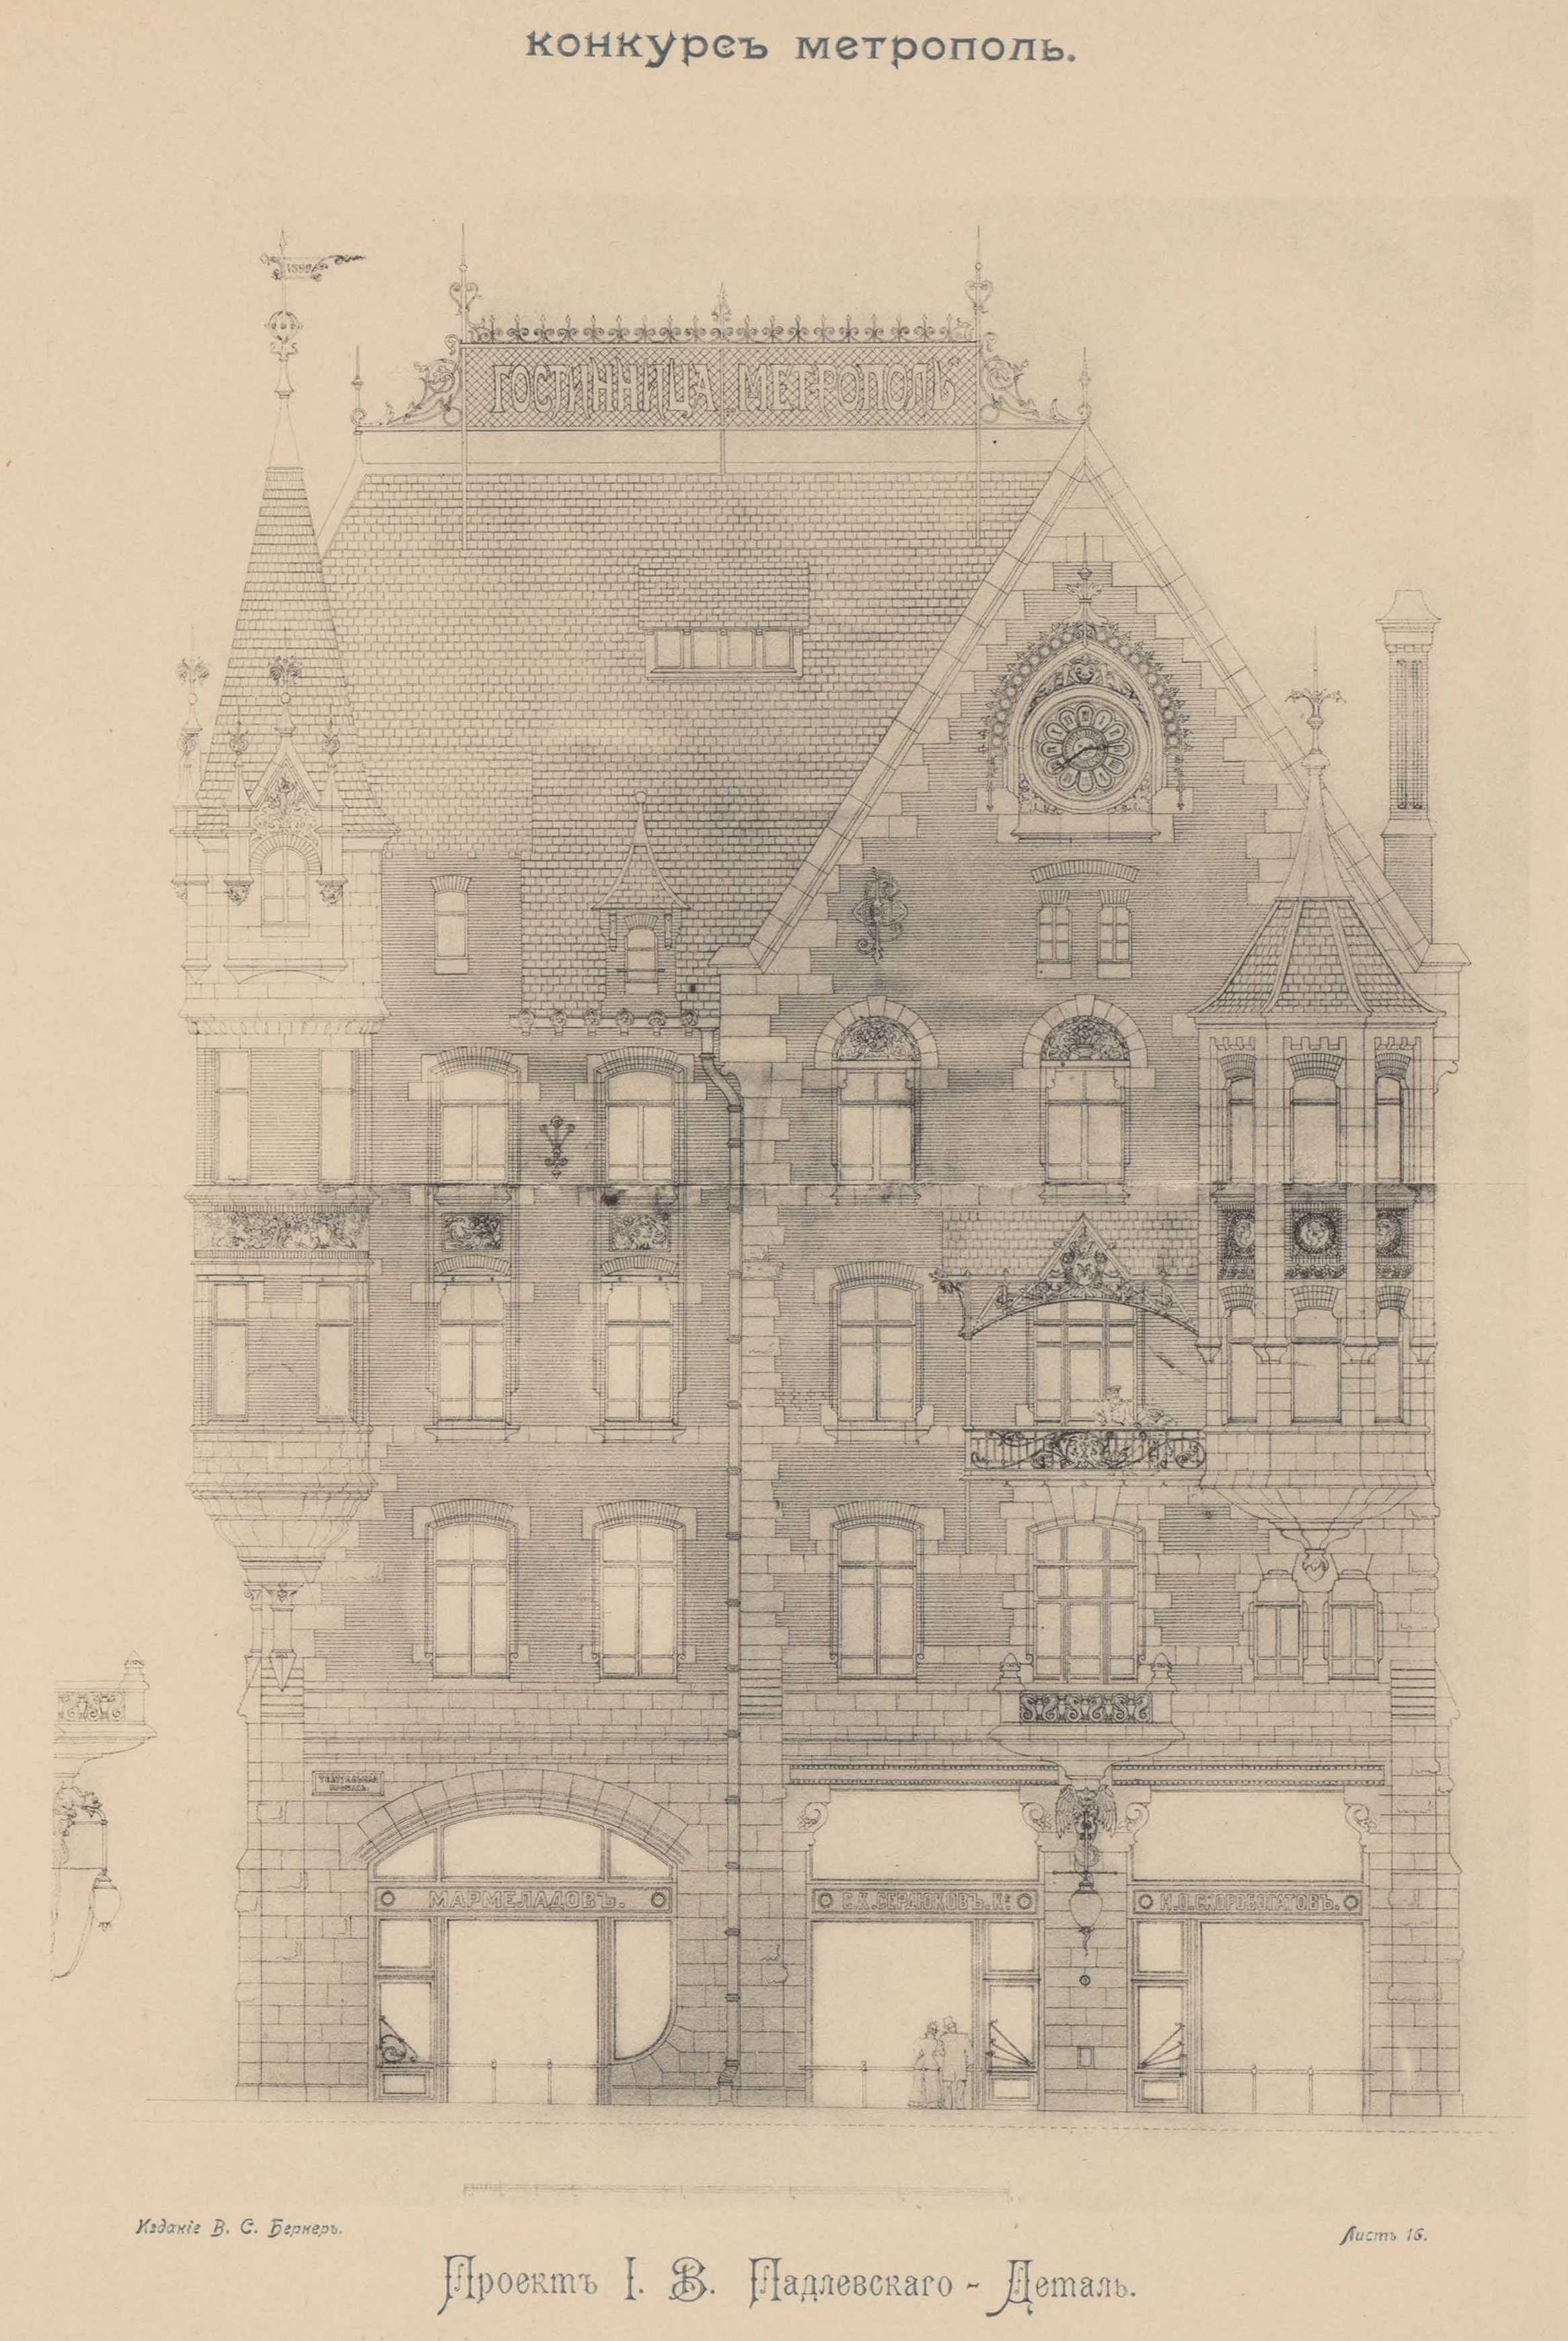 Конкурс на фасад гостиницы «Метрополь» (1899). Проект рекомендованный жюри для приобретения. Проект архитектора И. В. Падлевского